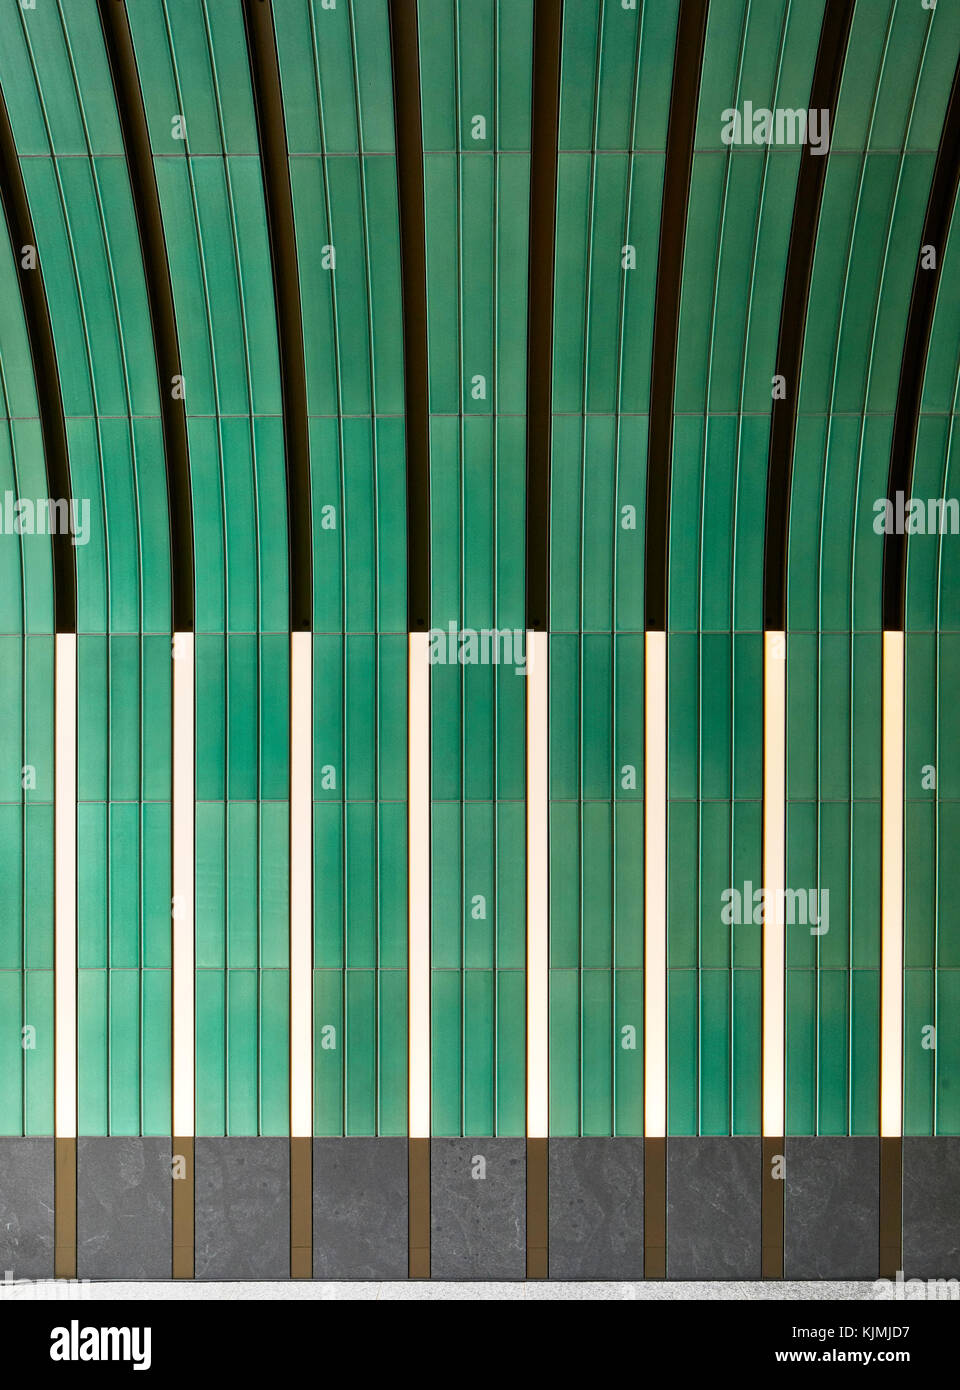 Grün keramische Wand innerhalb Eingang Tunnel. Rathbone Square, London, Vereinigtes Königreich. Architekt: Machen Ltd, 2017. Stockfoto